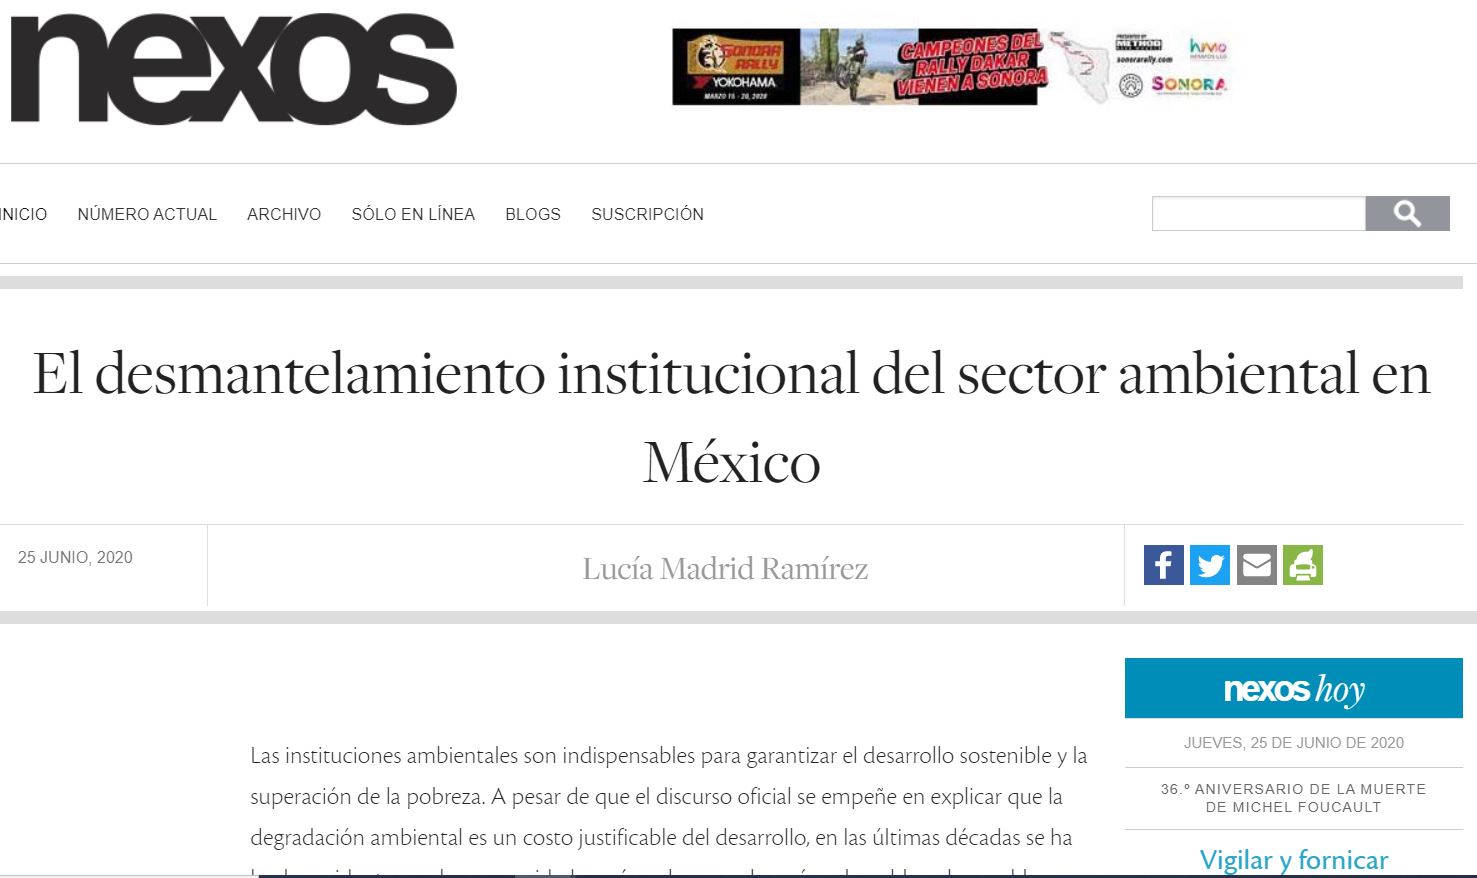 El desmantelamiento institucional del sector ambiental en México